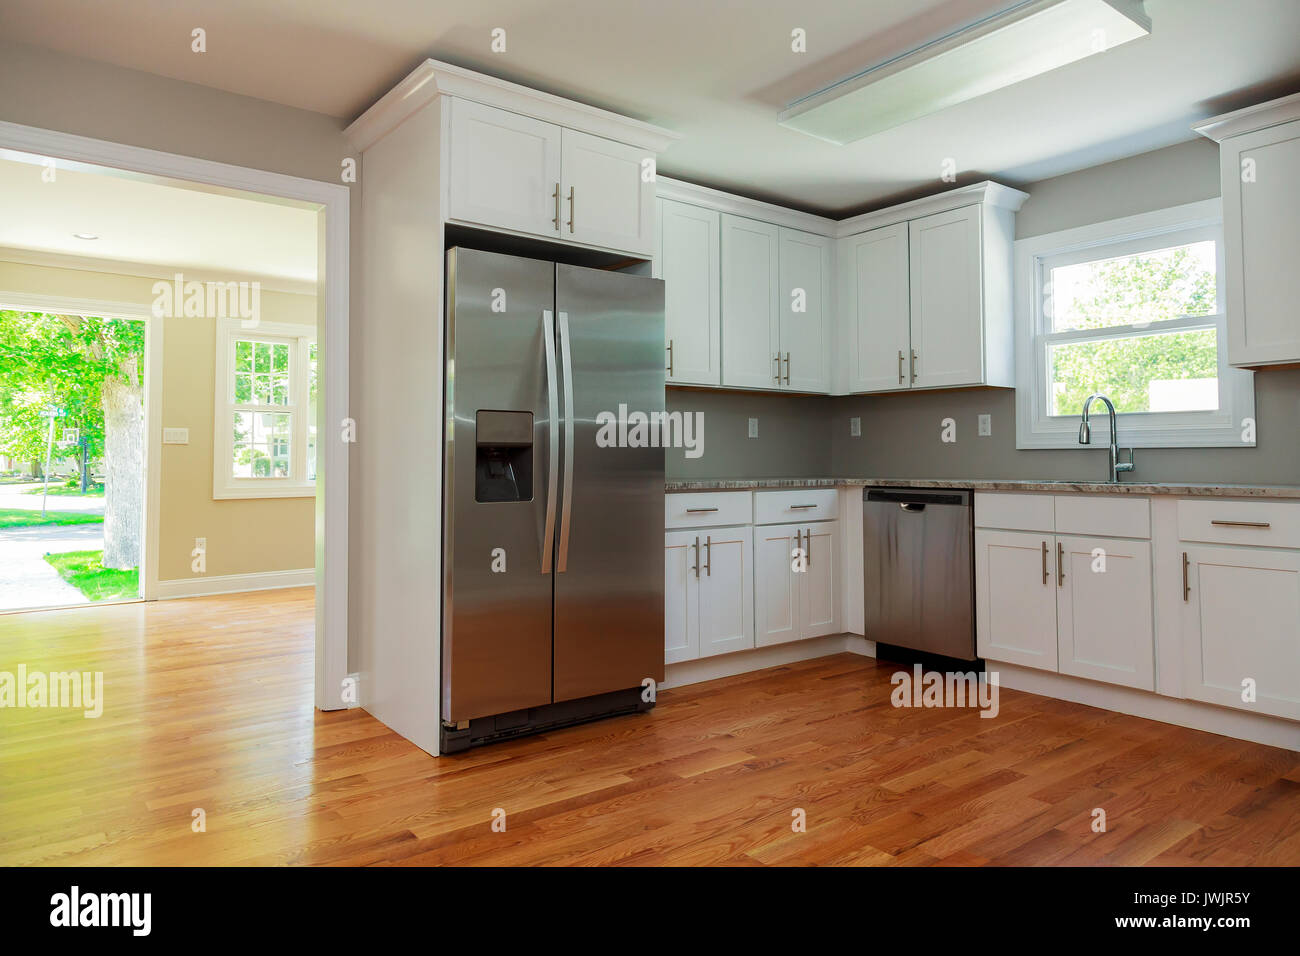 Cucina bianca interno con lavandino, armadi e pavimenti in legno massiccio nella nuova casa di lusso con luci spente Foto Stock